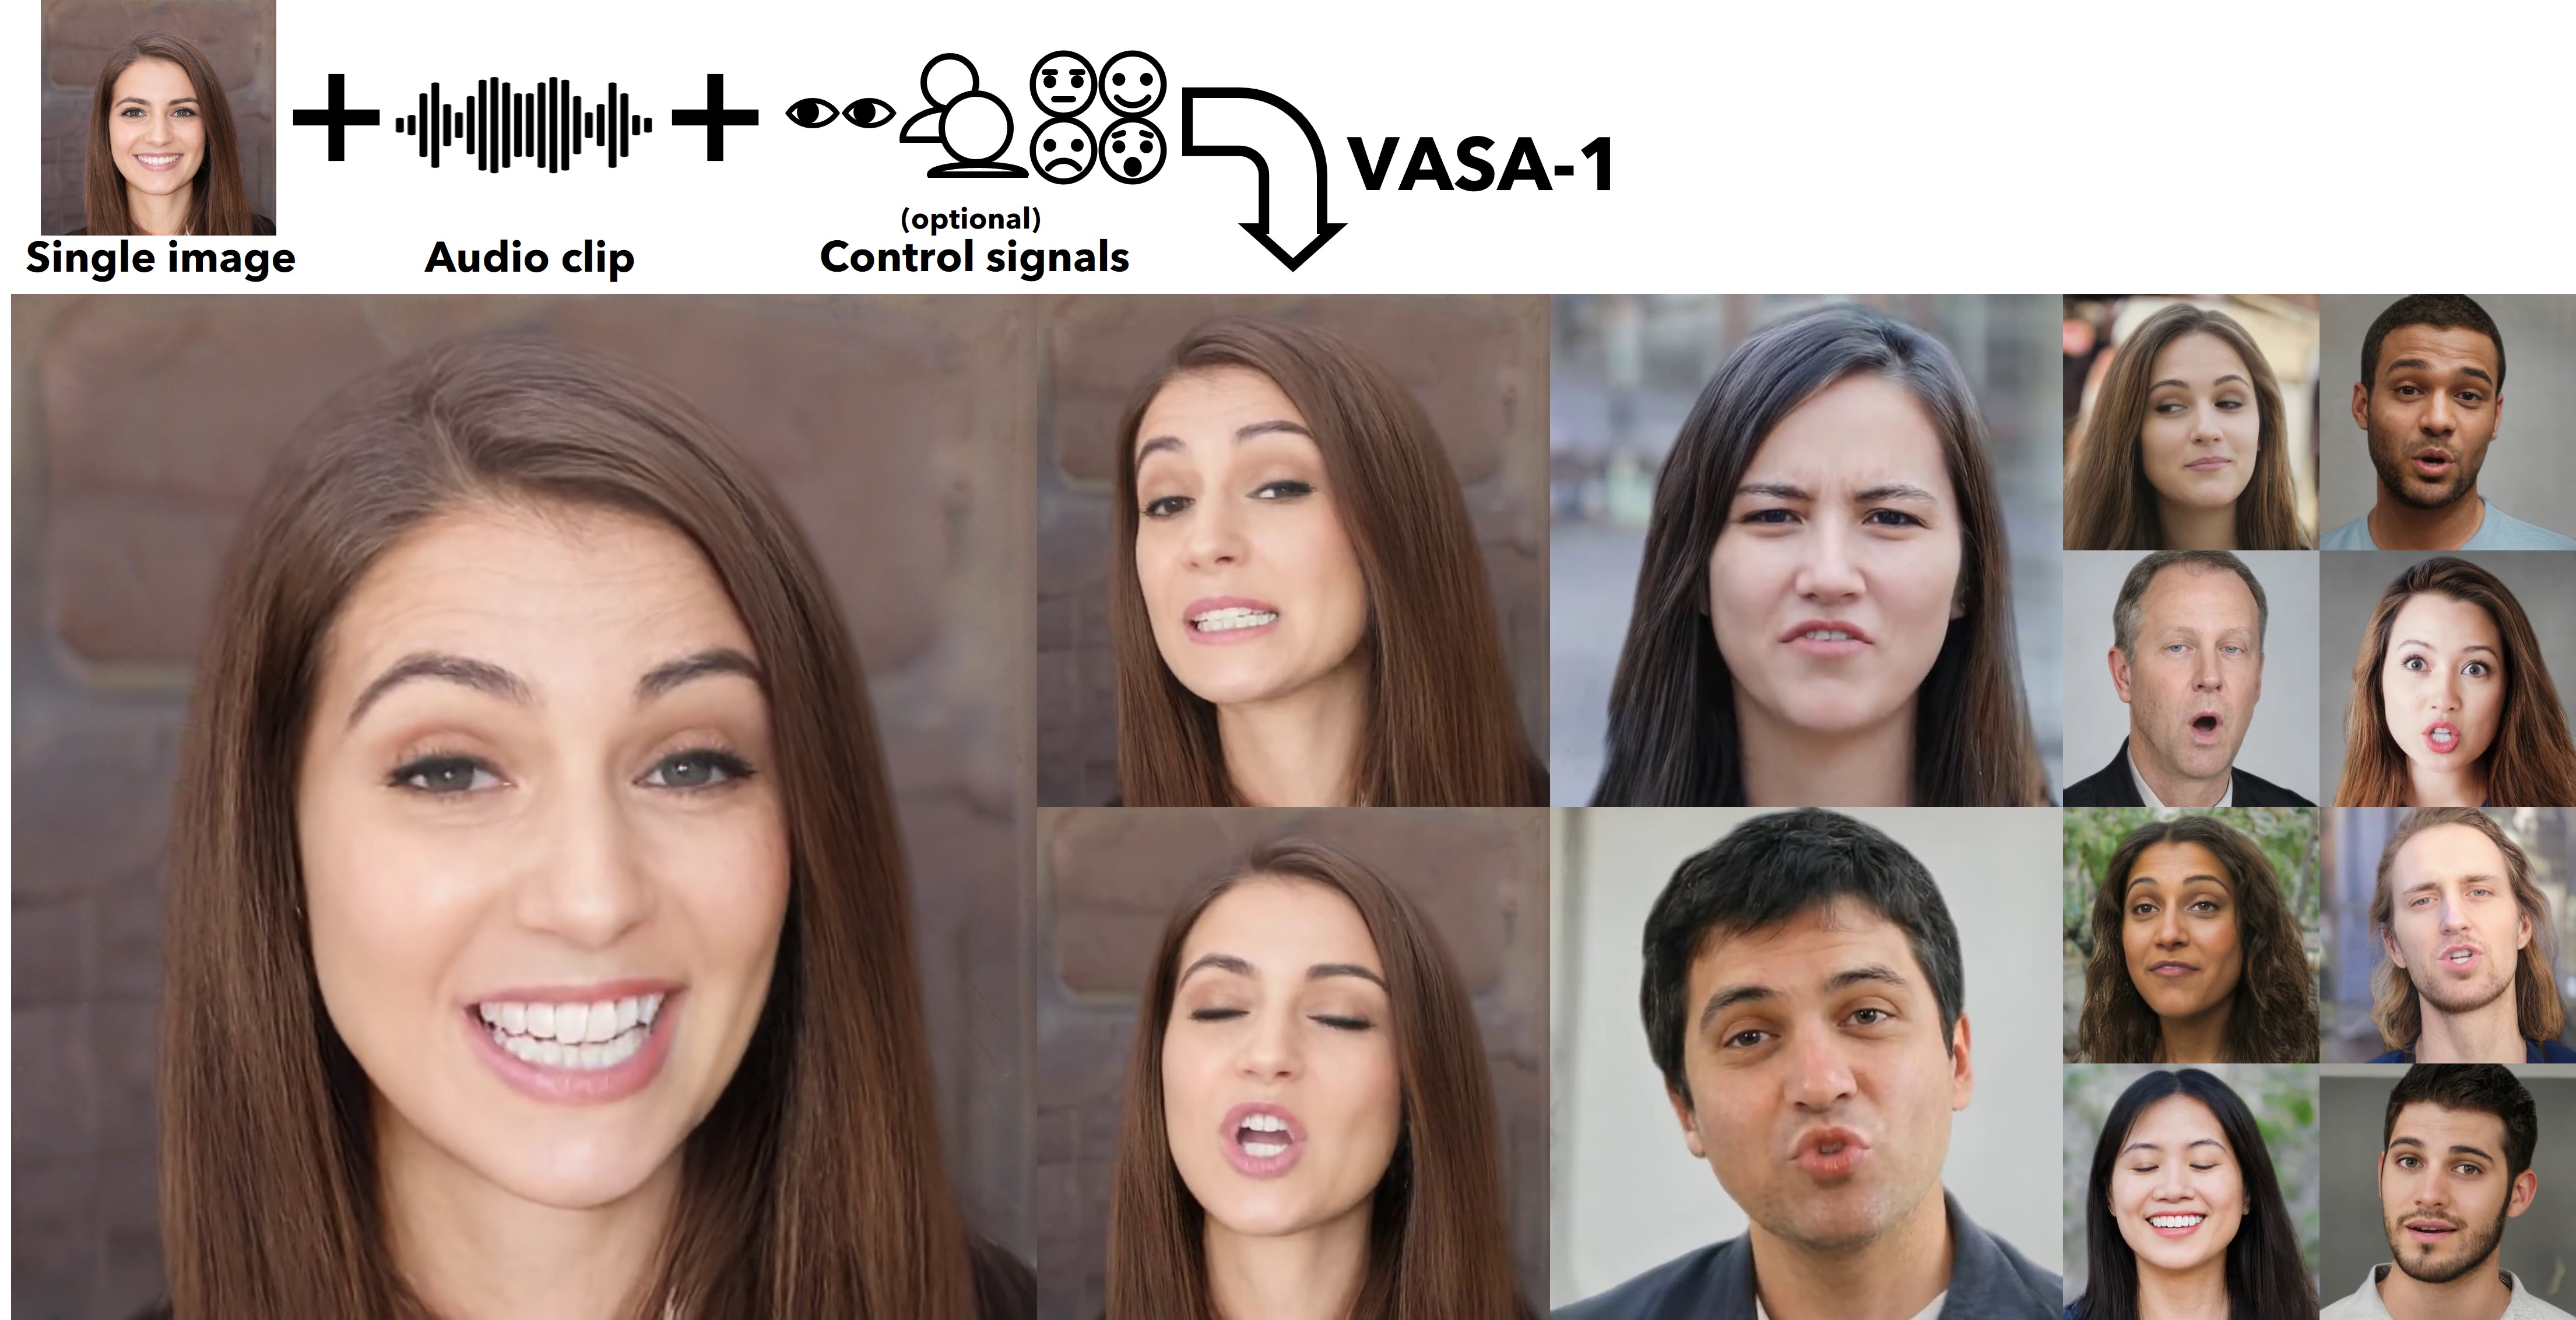 微軟研究所推出 VASA-1 架構 - 用單一照片和錄音生成逼真虛擬角色 - 電腦王阿達